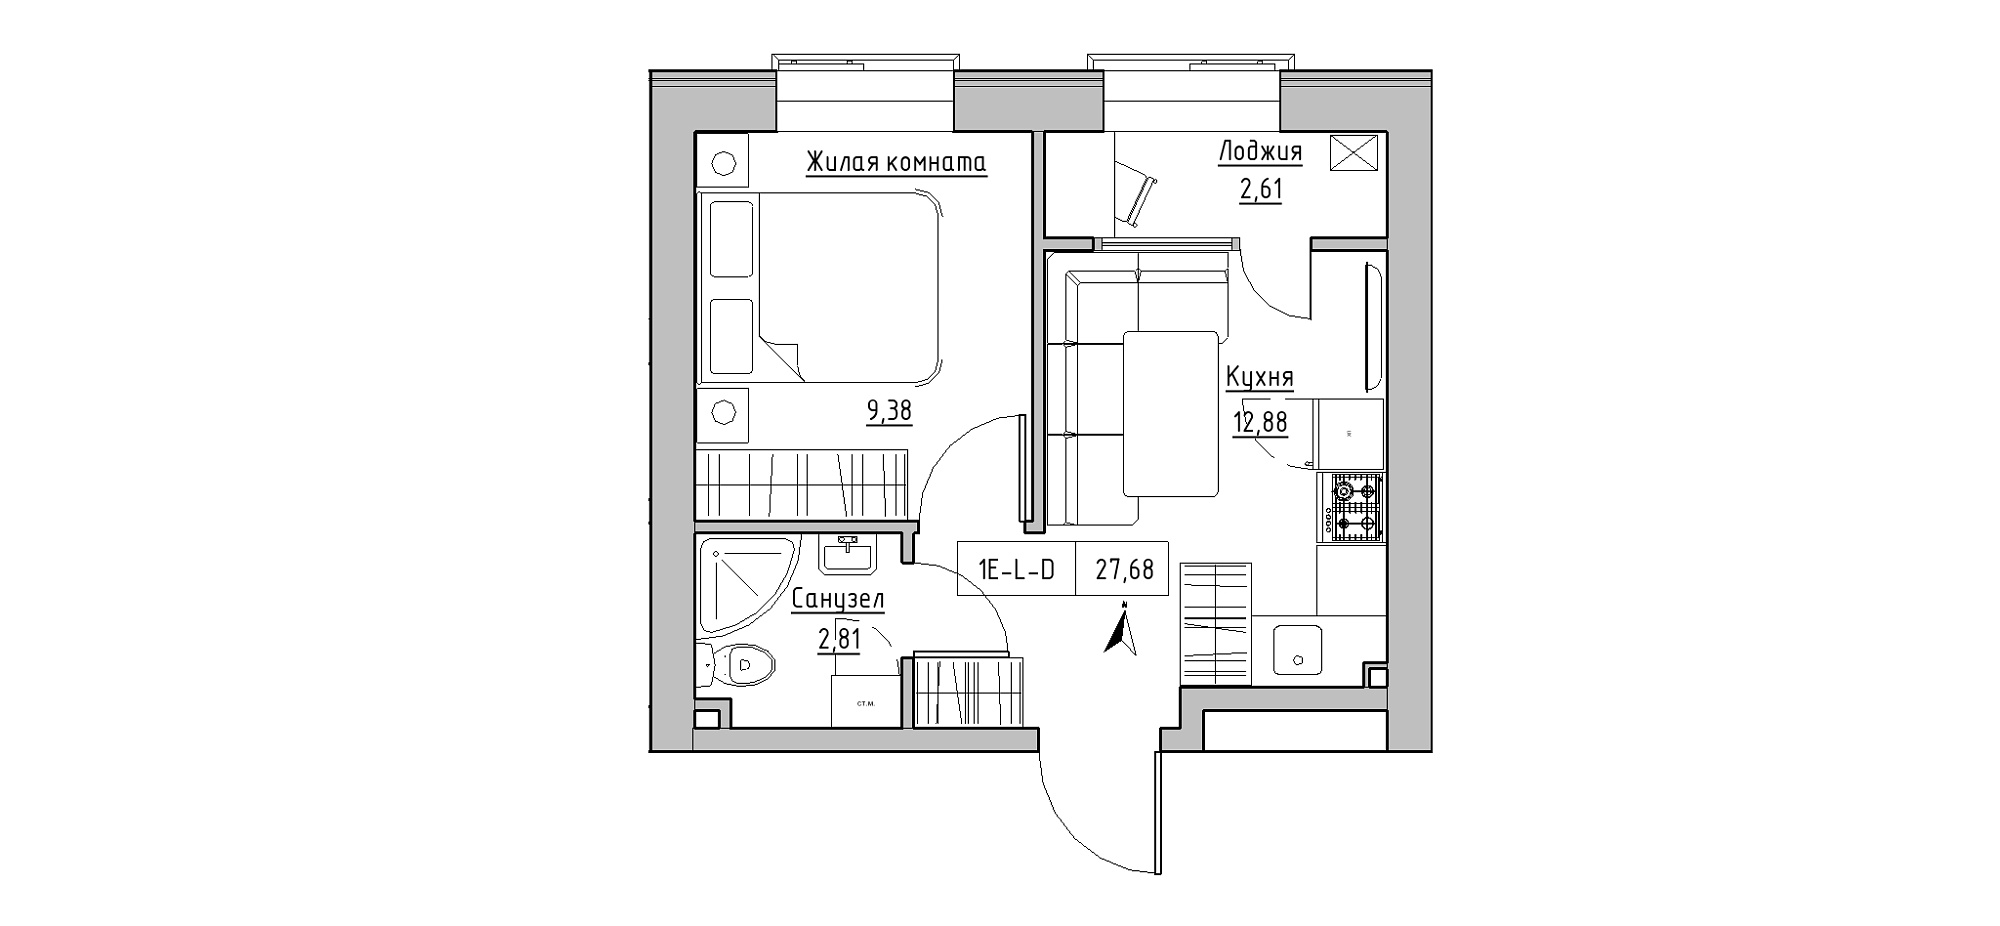 Планування 1-к квартира площею 27.68м2, KS-020-01/0001.